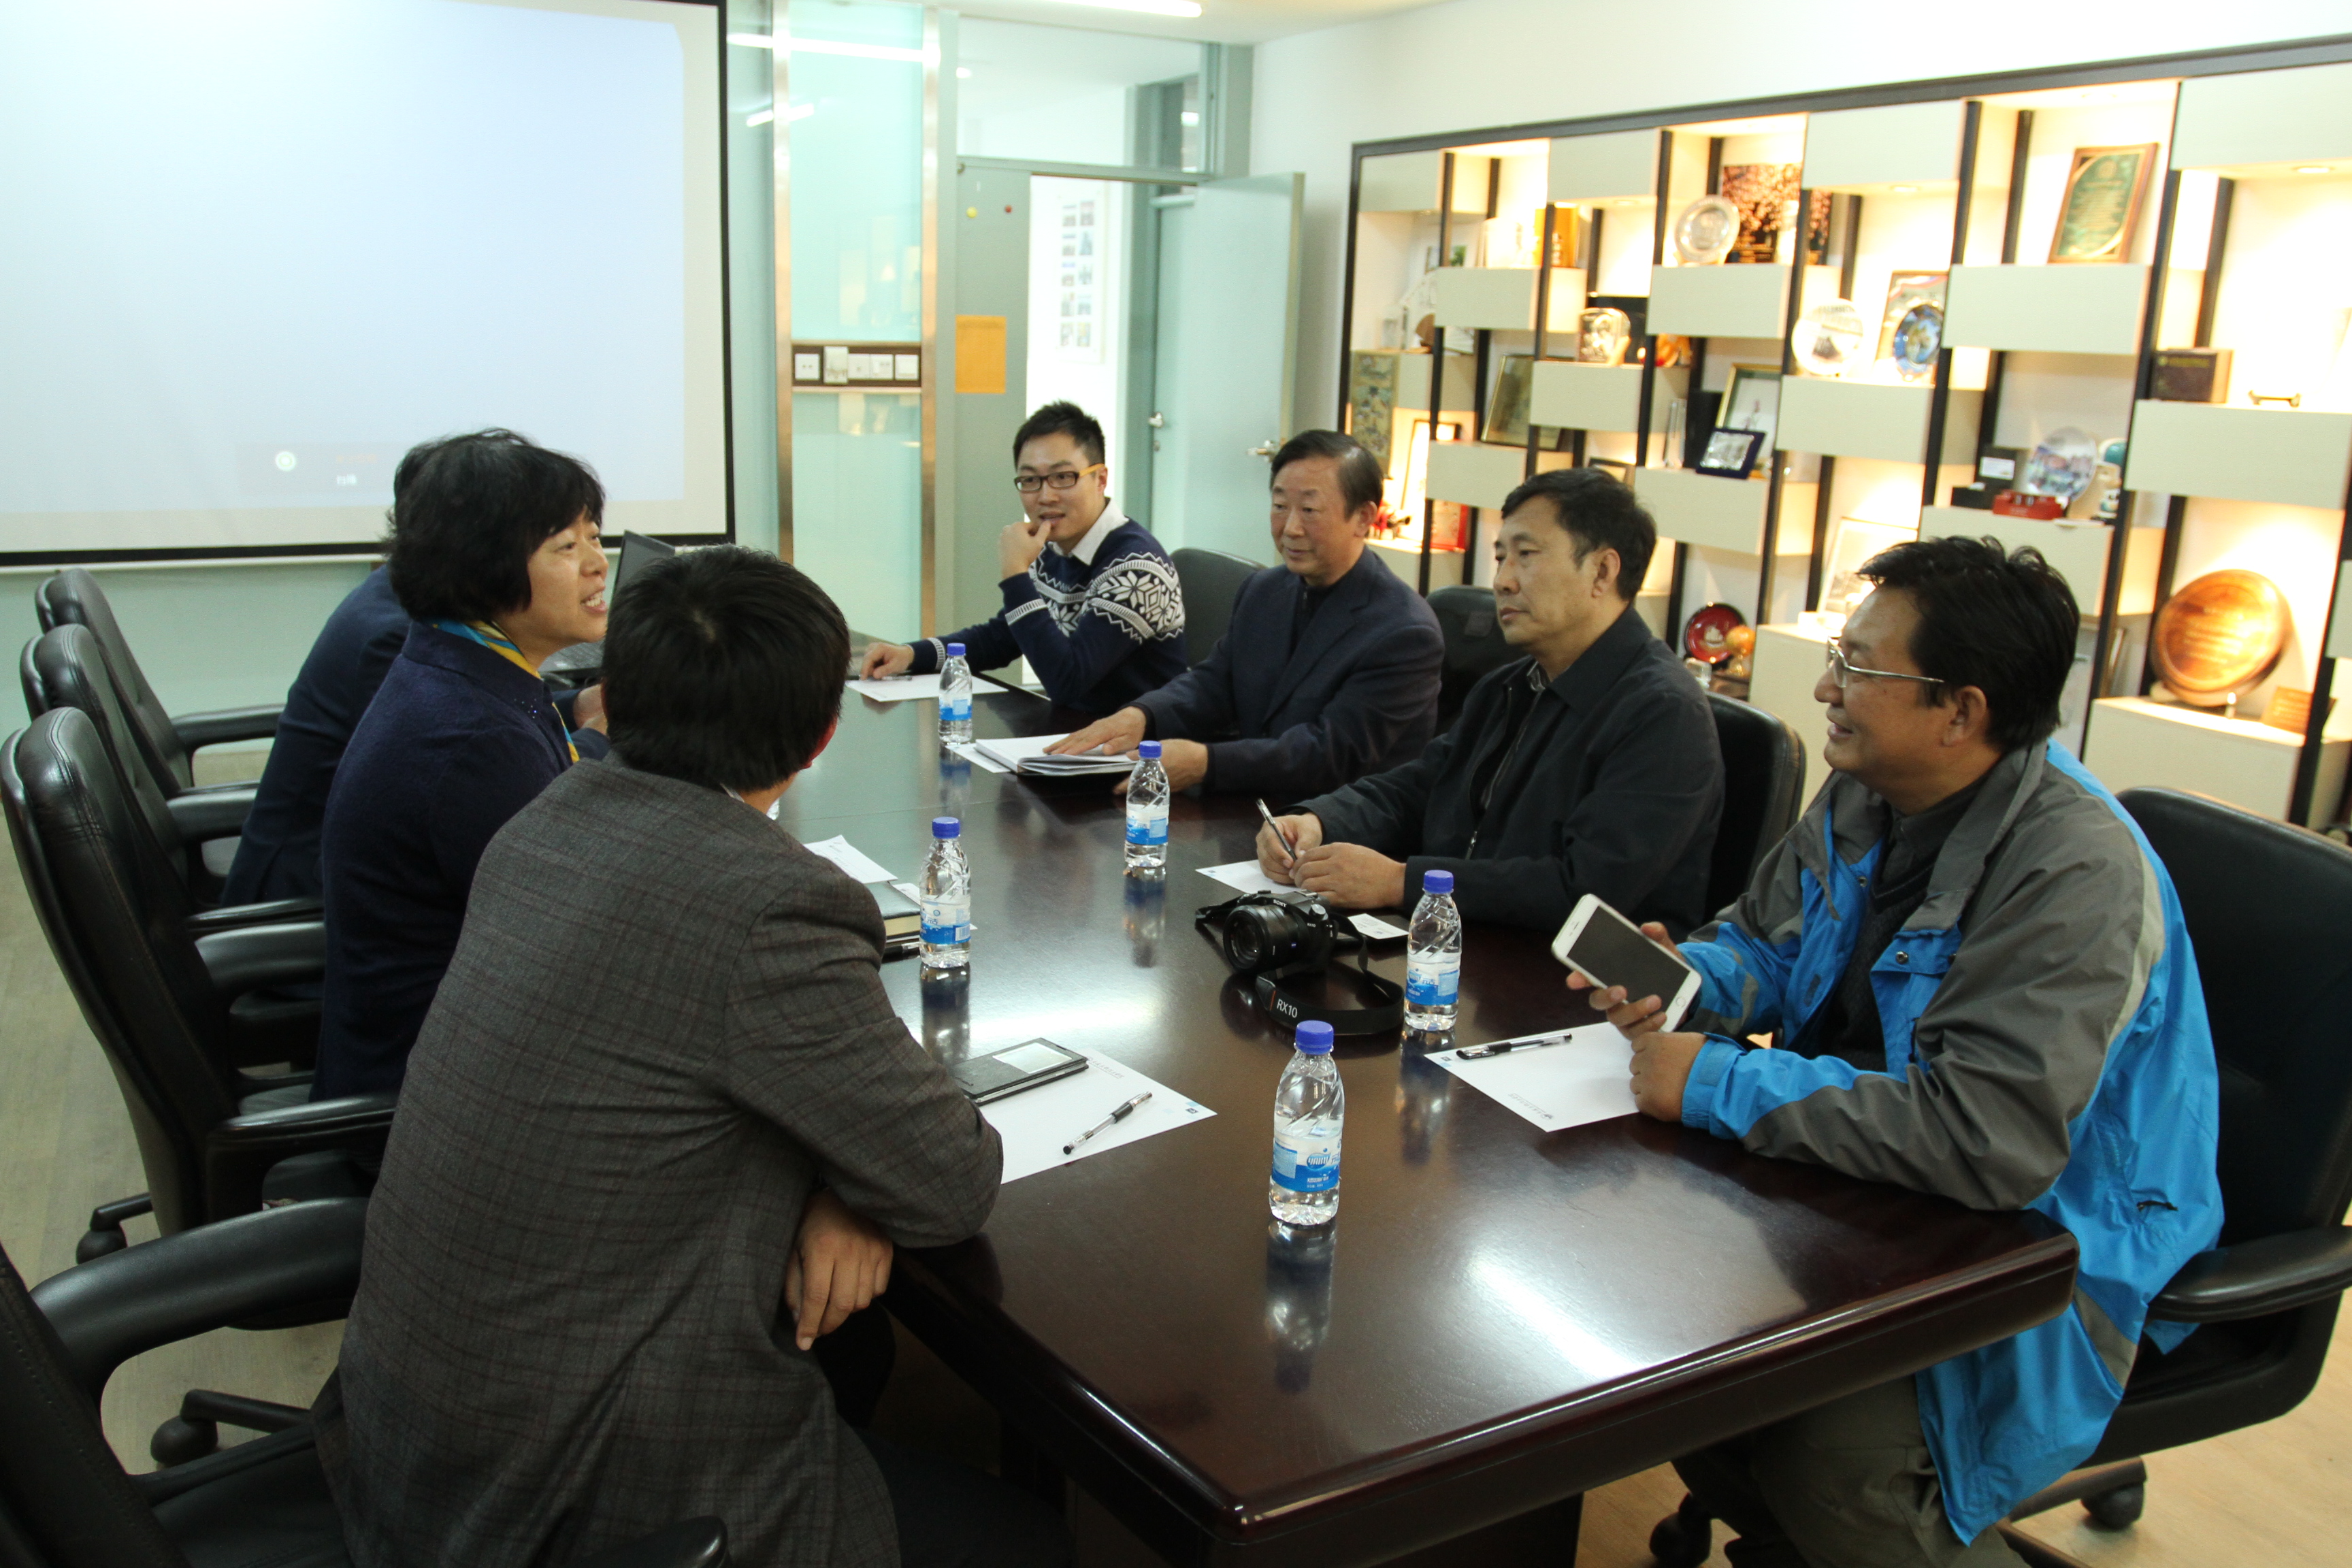 国际教育学院院长杨璐老师与来访嘉宾座谈交流